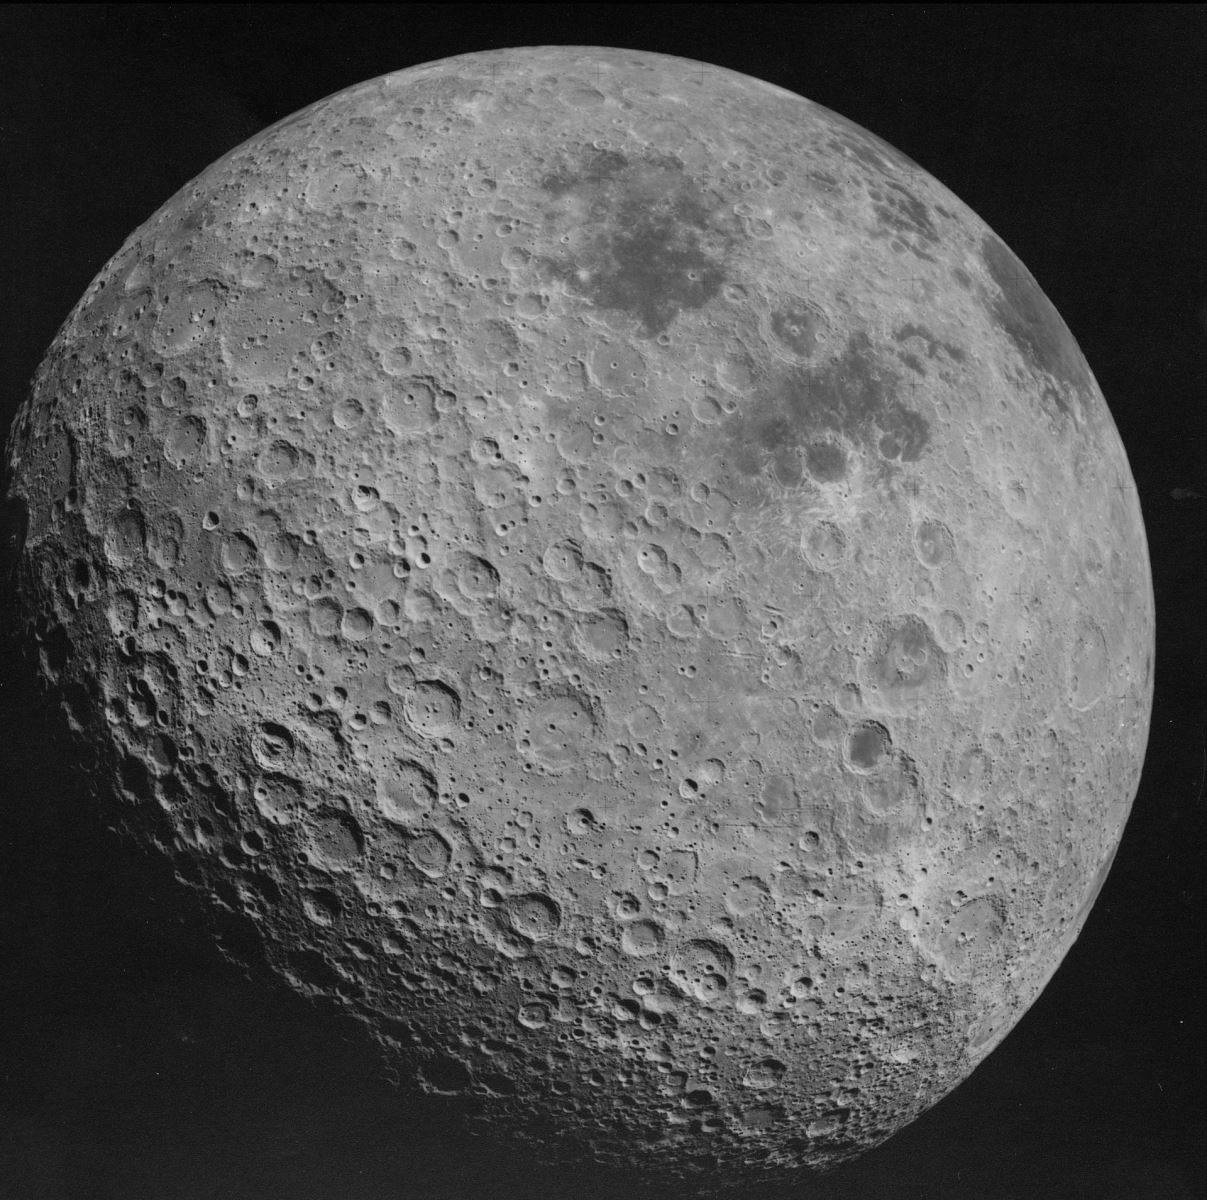 Bí ẩn những quả cầu thủy tinh mà Trung Quốc phát hiện ở Vùng tối Mặt Trăng - Ảnh 5.